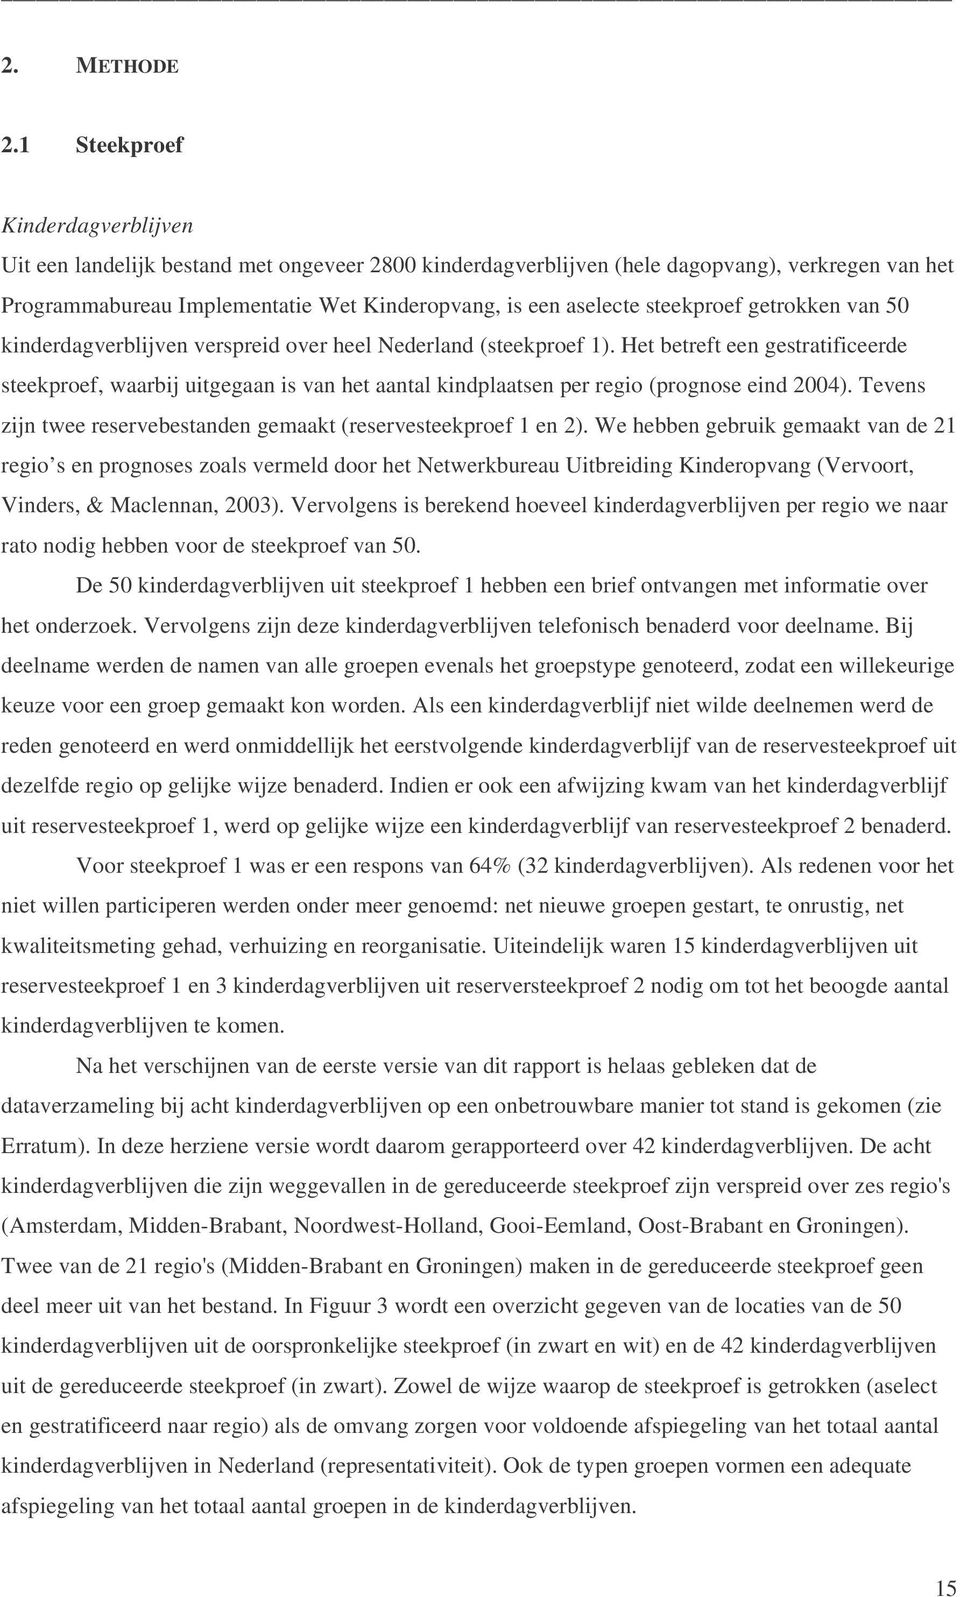 steekproef getrokken van 50 kinderdagverblijven verspreid over heel Nederland (steekproef 1).